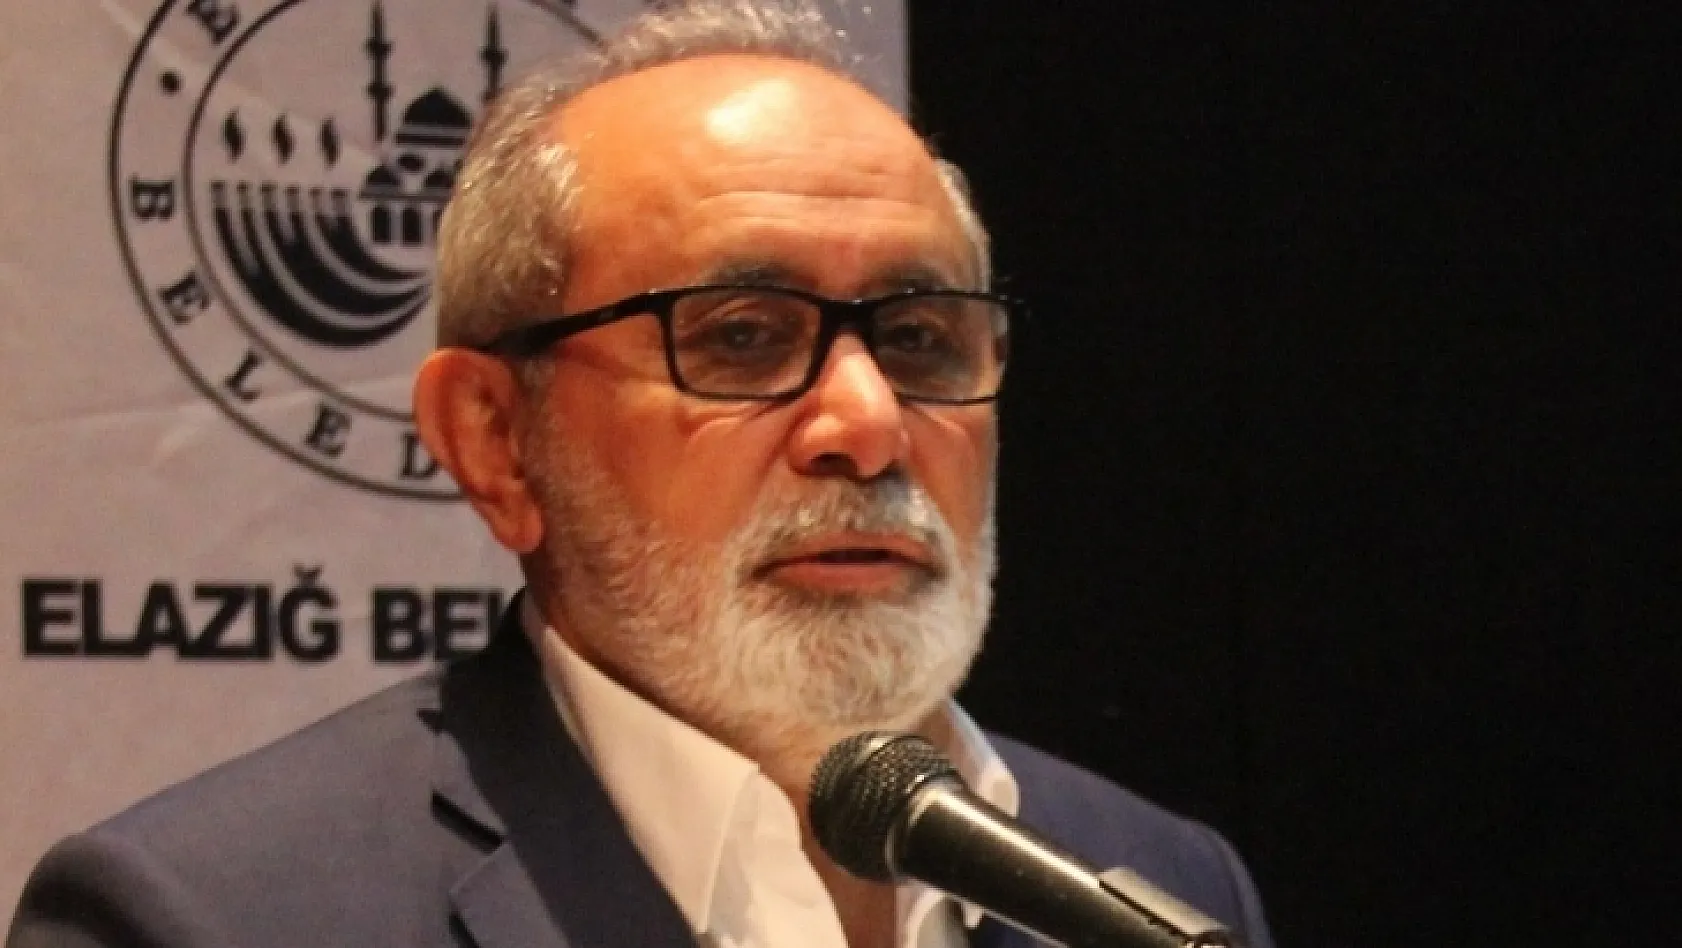 Elazığspor Başkanı Yumakgil'den Flaş Açıklamalar